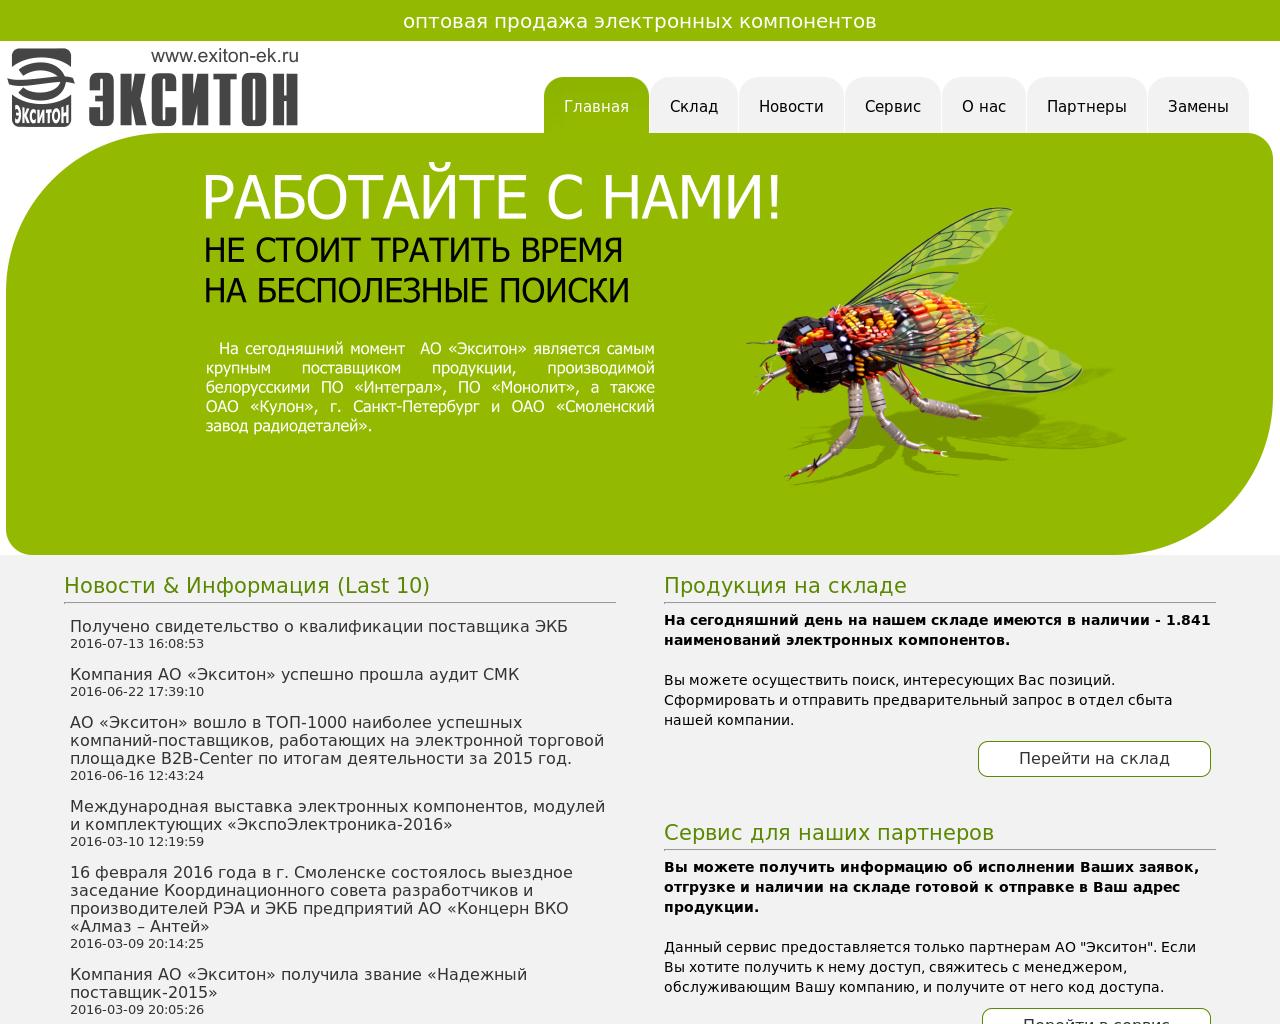 Изображение сайта exiton-ek.ru в разрешении 1280x1024